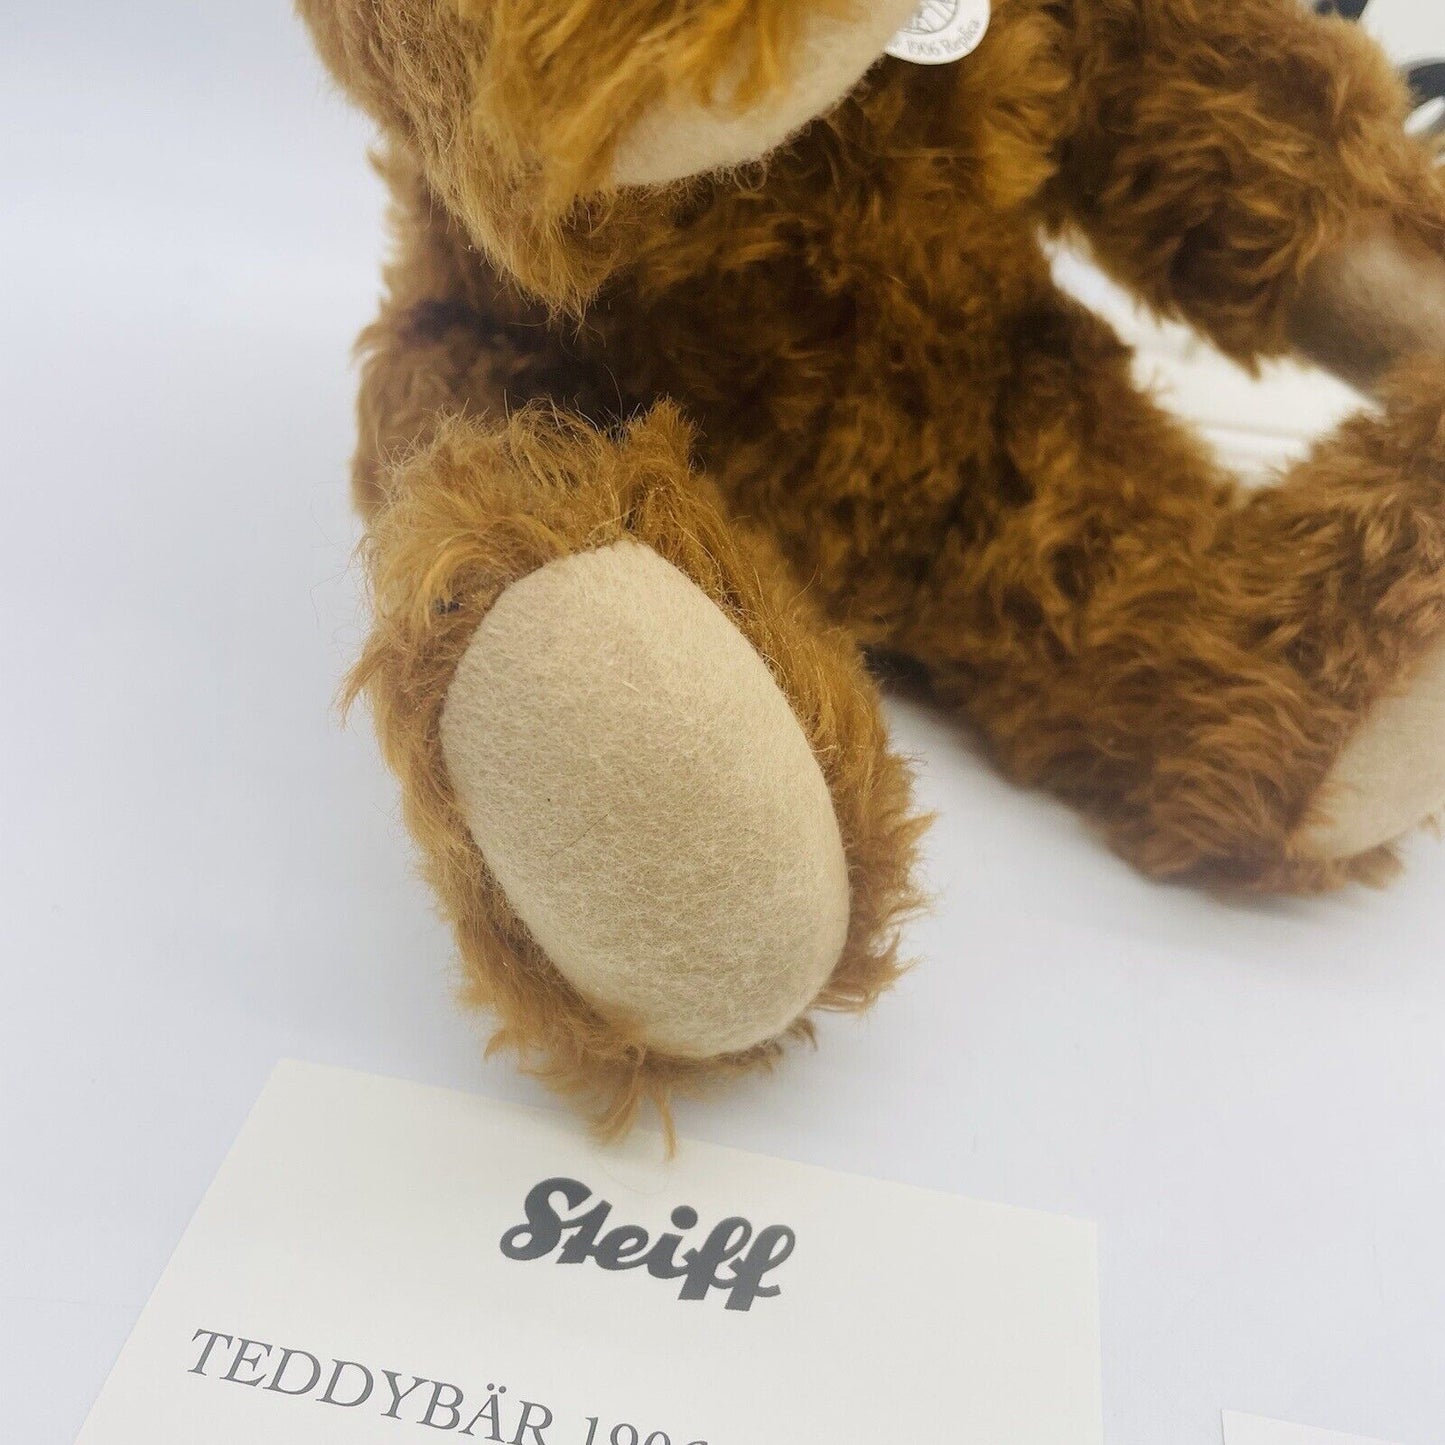 Steiff Teddybär 1906 Replica 403040 limitiert 1906 35cm aus 2011 Mohair